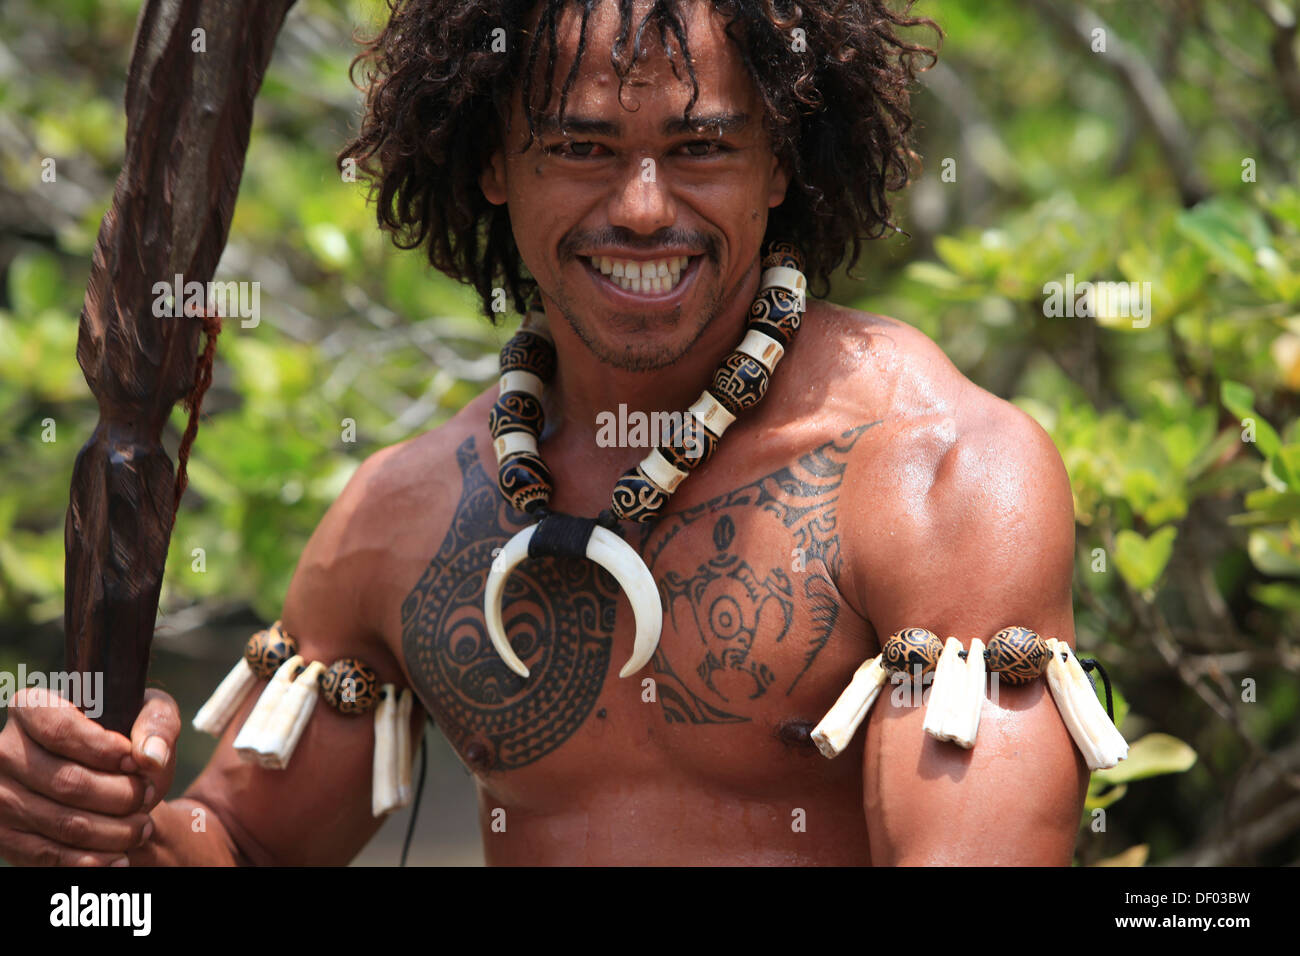 Tatuato uomo di eseguire una danza di guerra, Ua Pou, Isole Marchesi, Polinesia francese, Polinesia, South Pacific Oceania Foto Stock